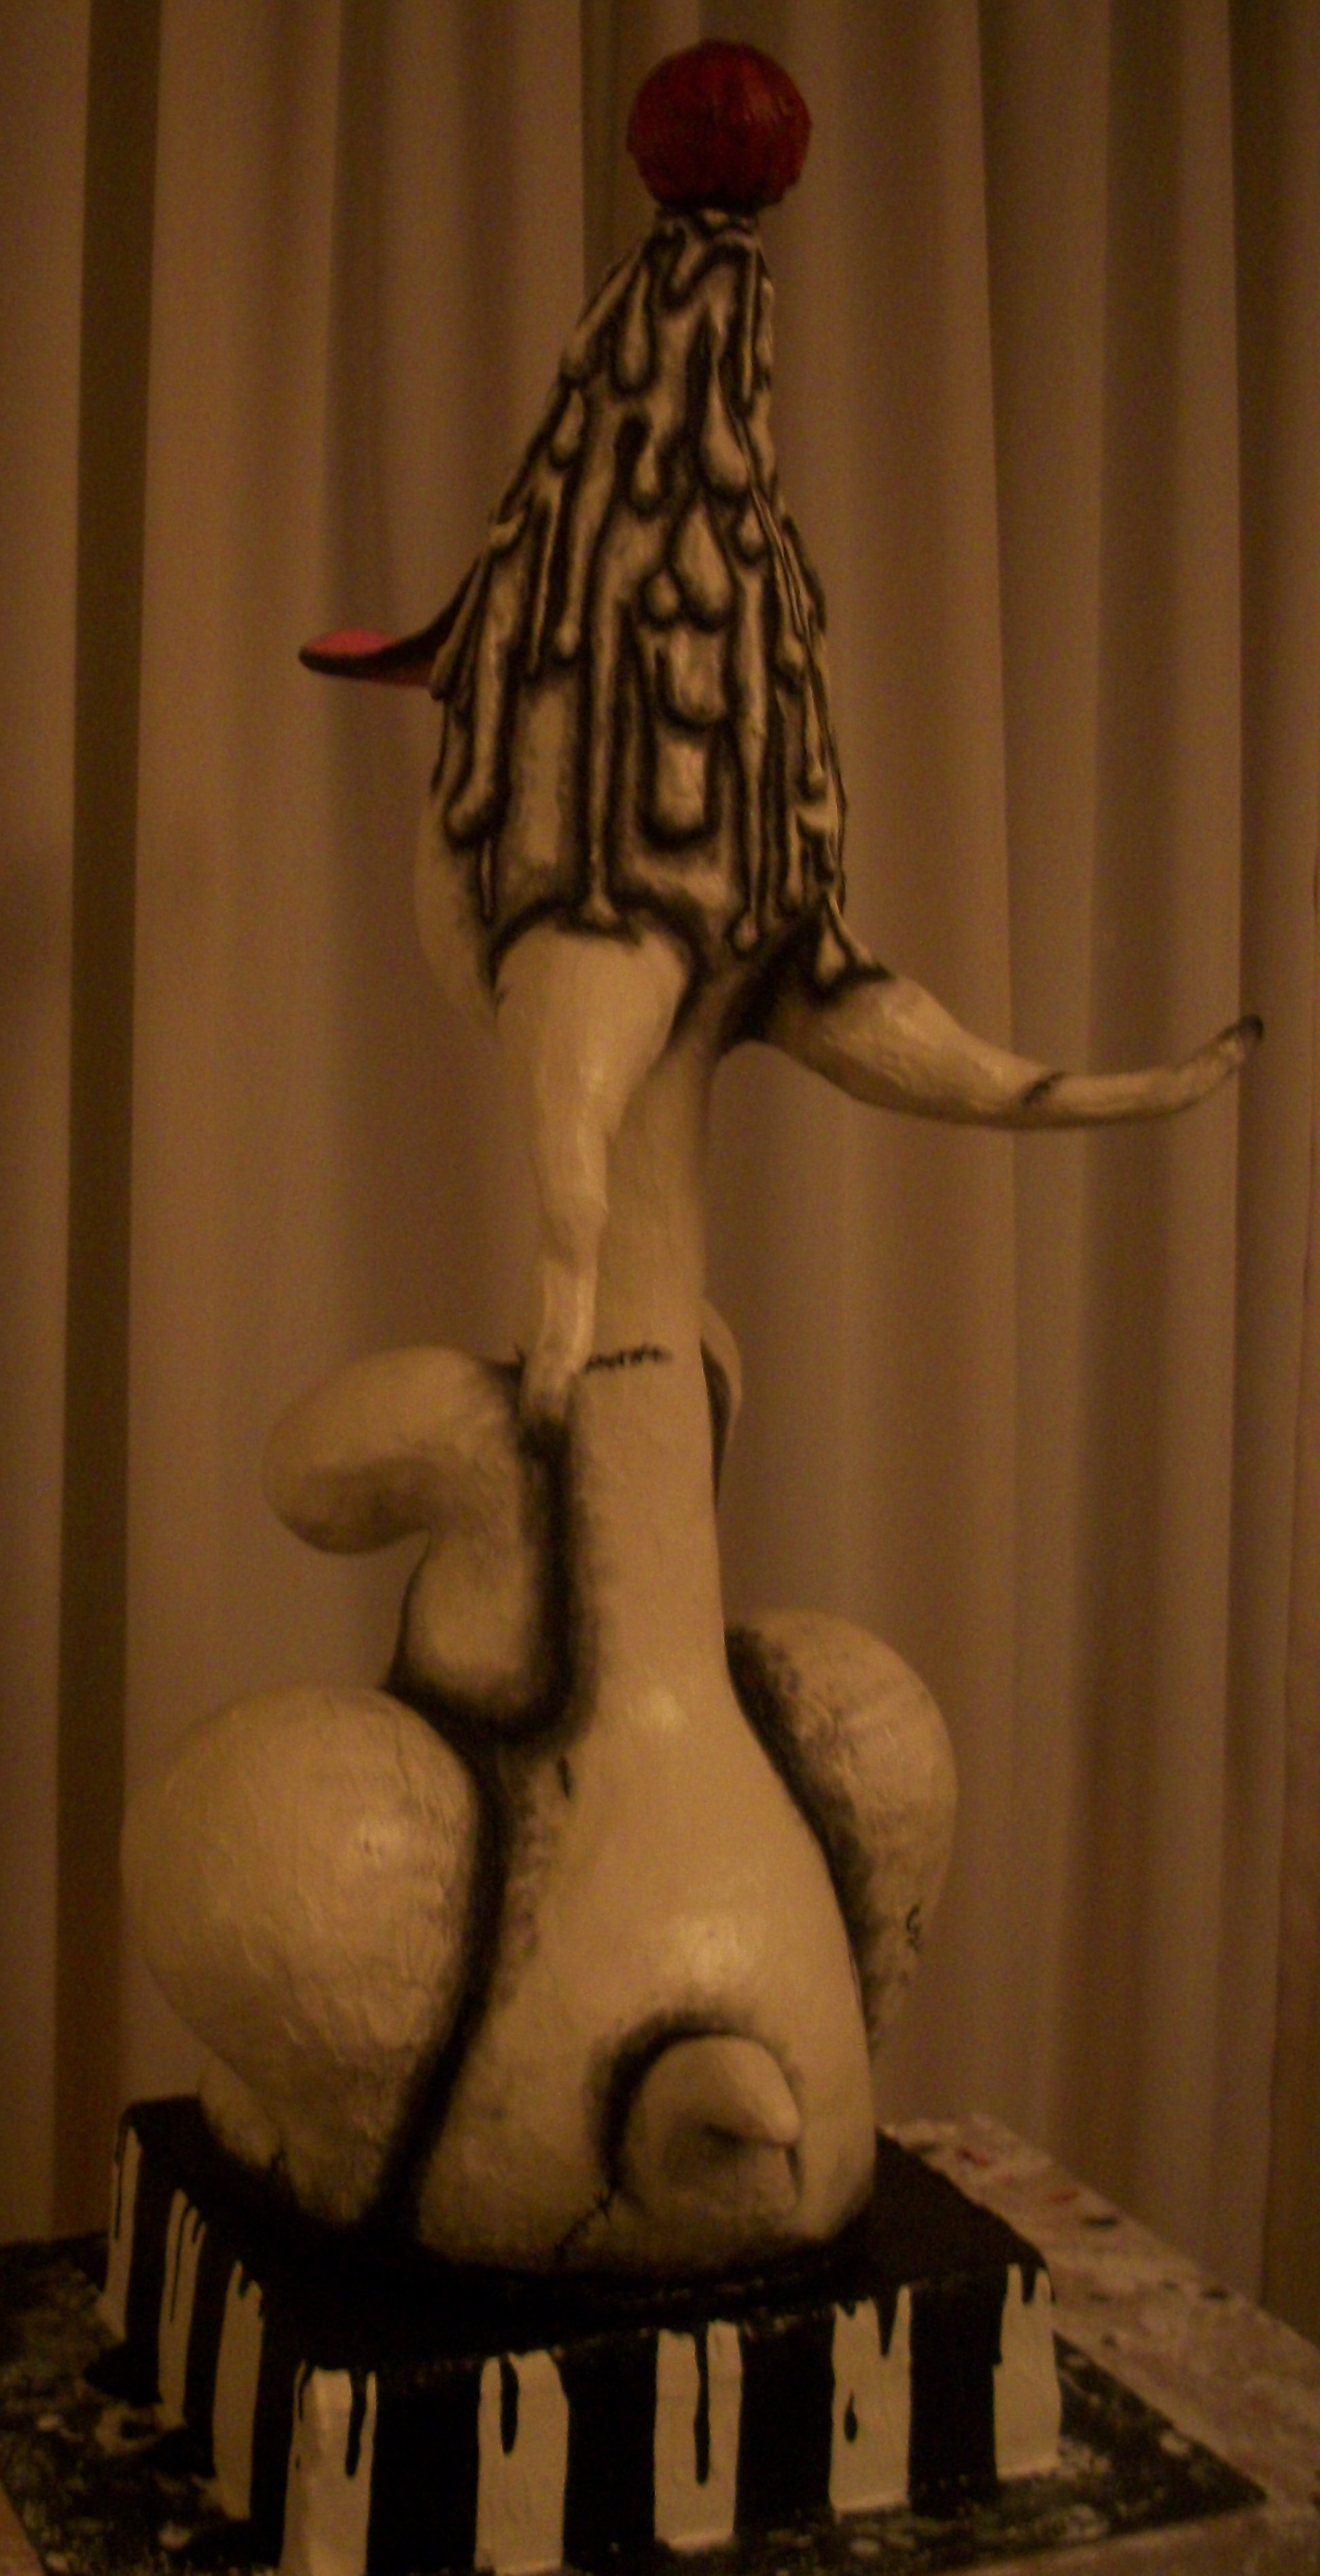 My third Sculpture. (2011)